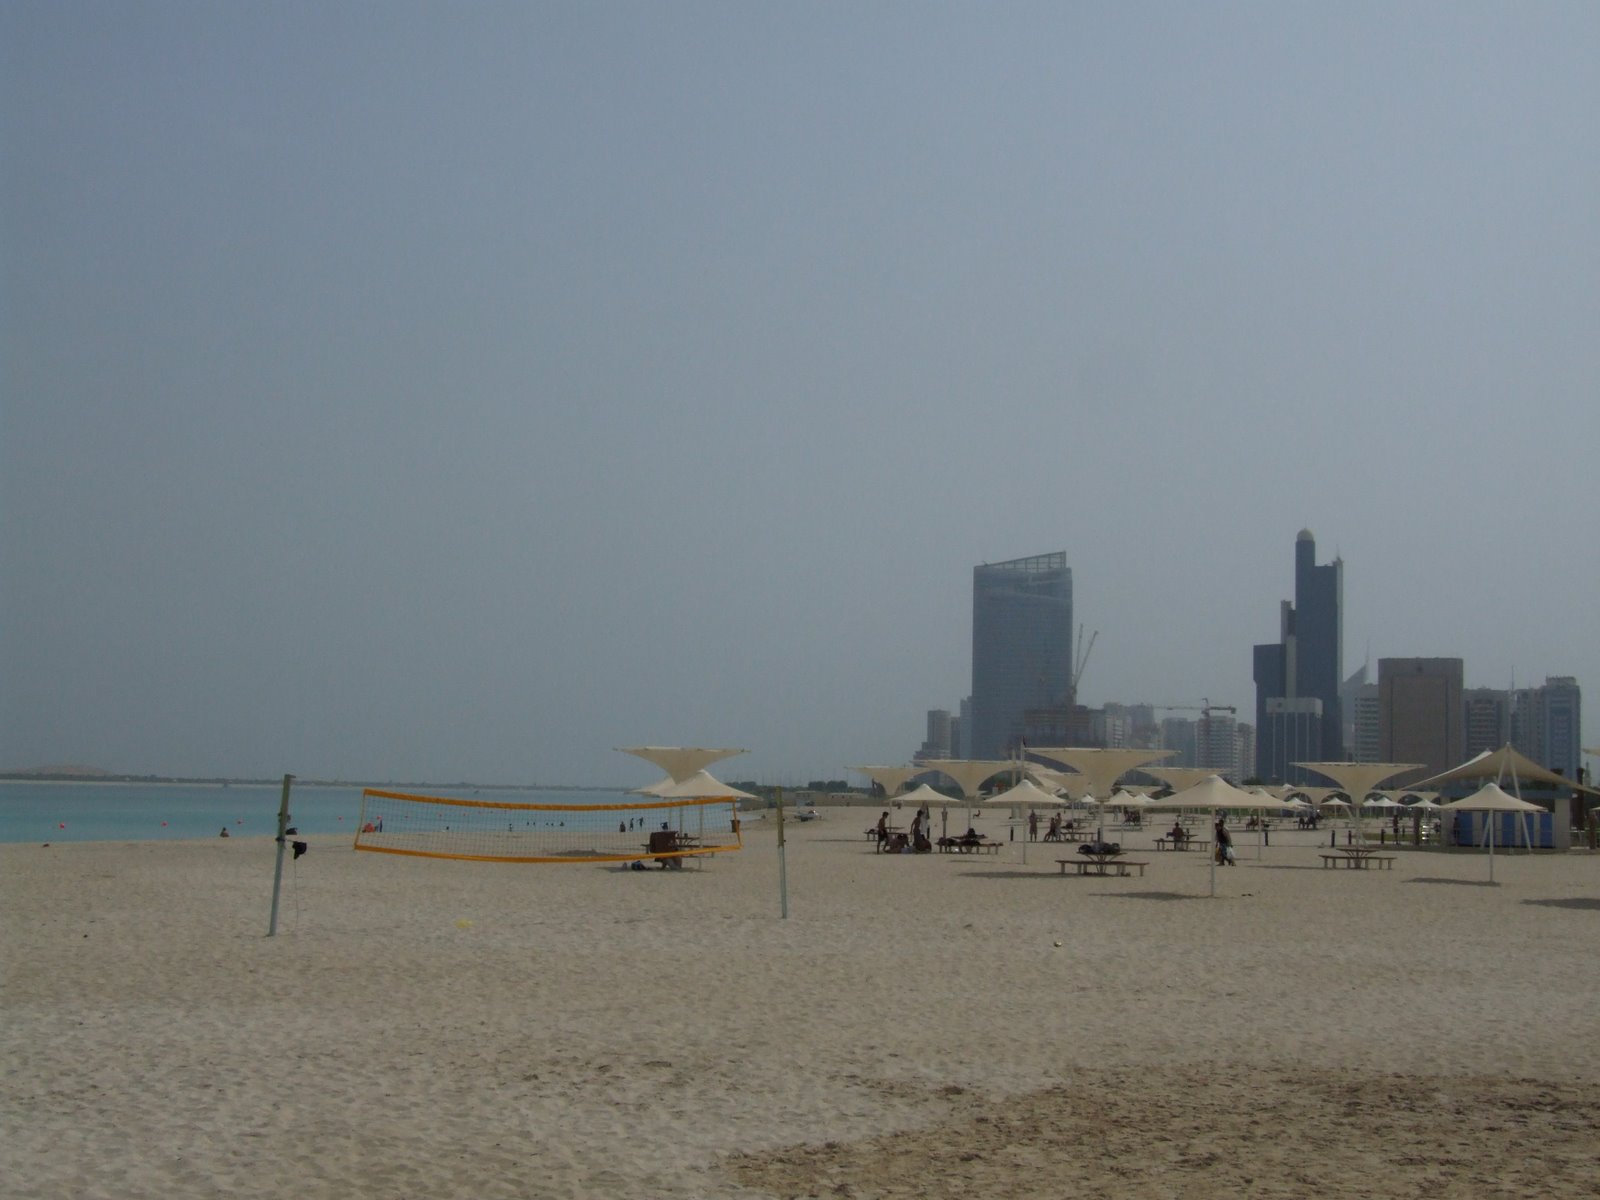 [Abu+Dhabi+Beach+5+DSCF3928.JPG]